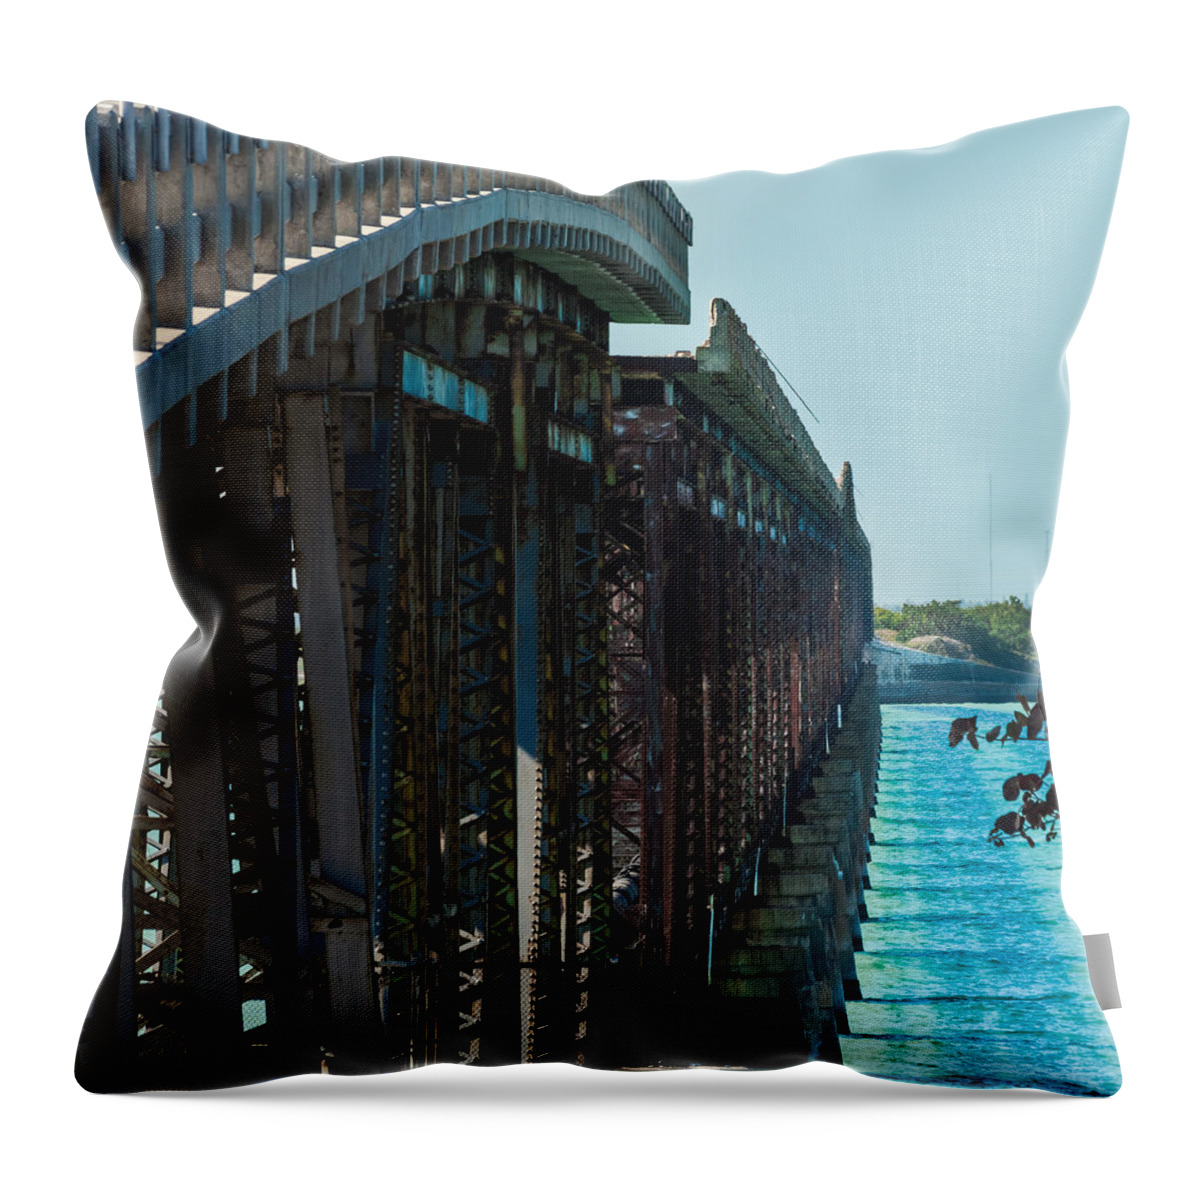 1938 Throw Pillow featuring the photograph Bahia Honda Bridge Patterns by Ed Gleichman